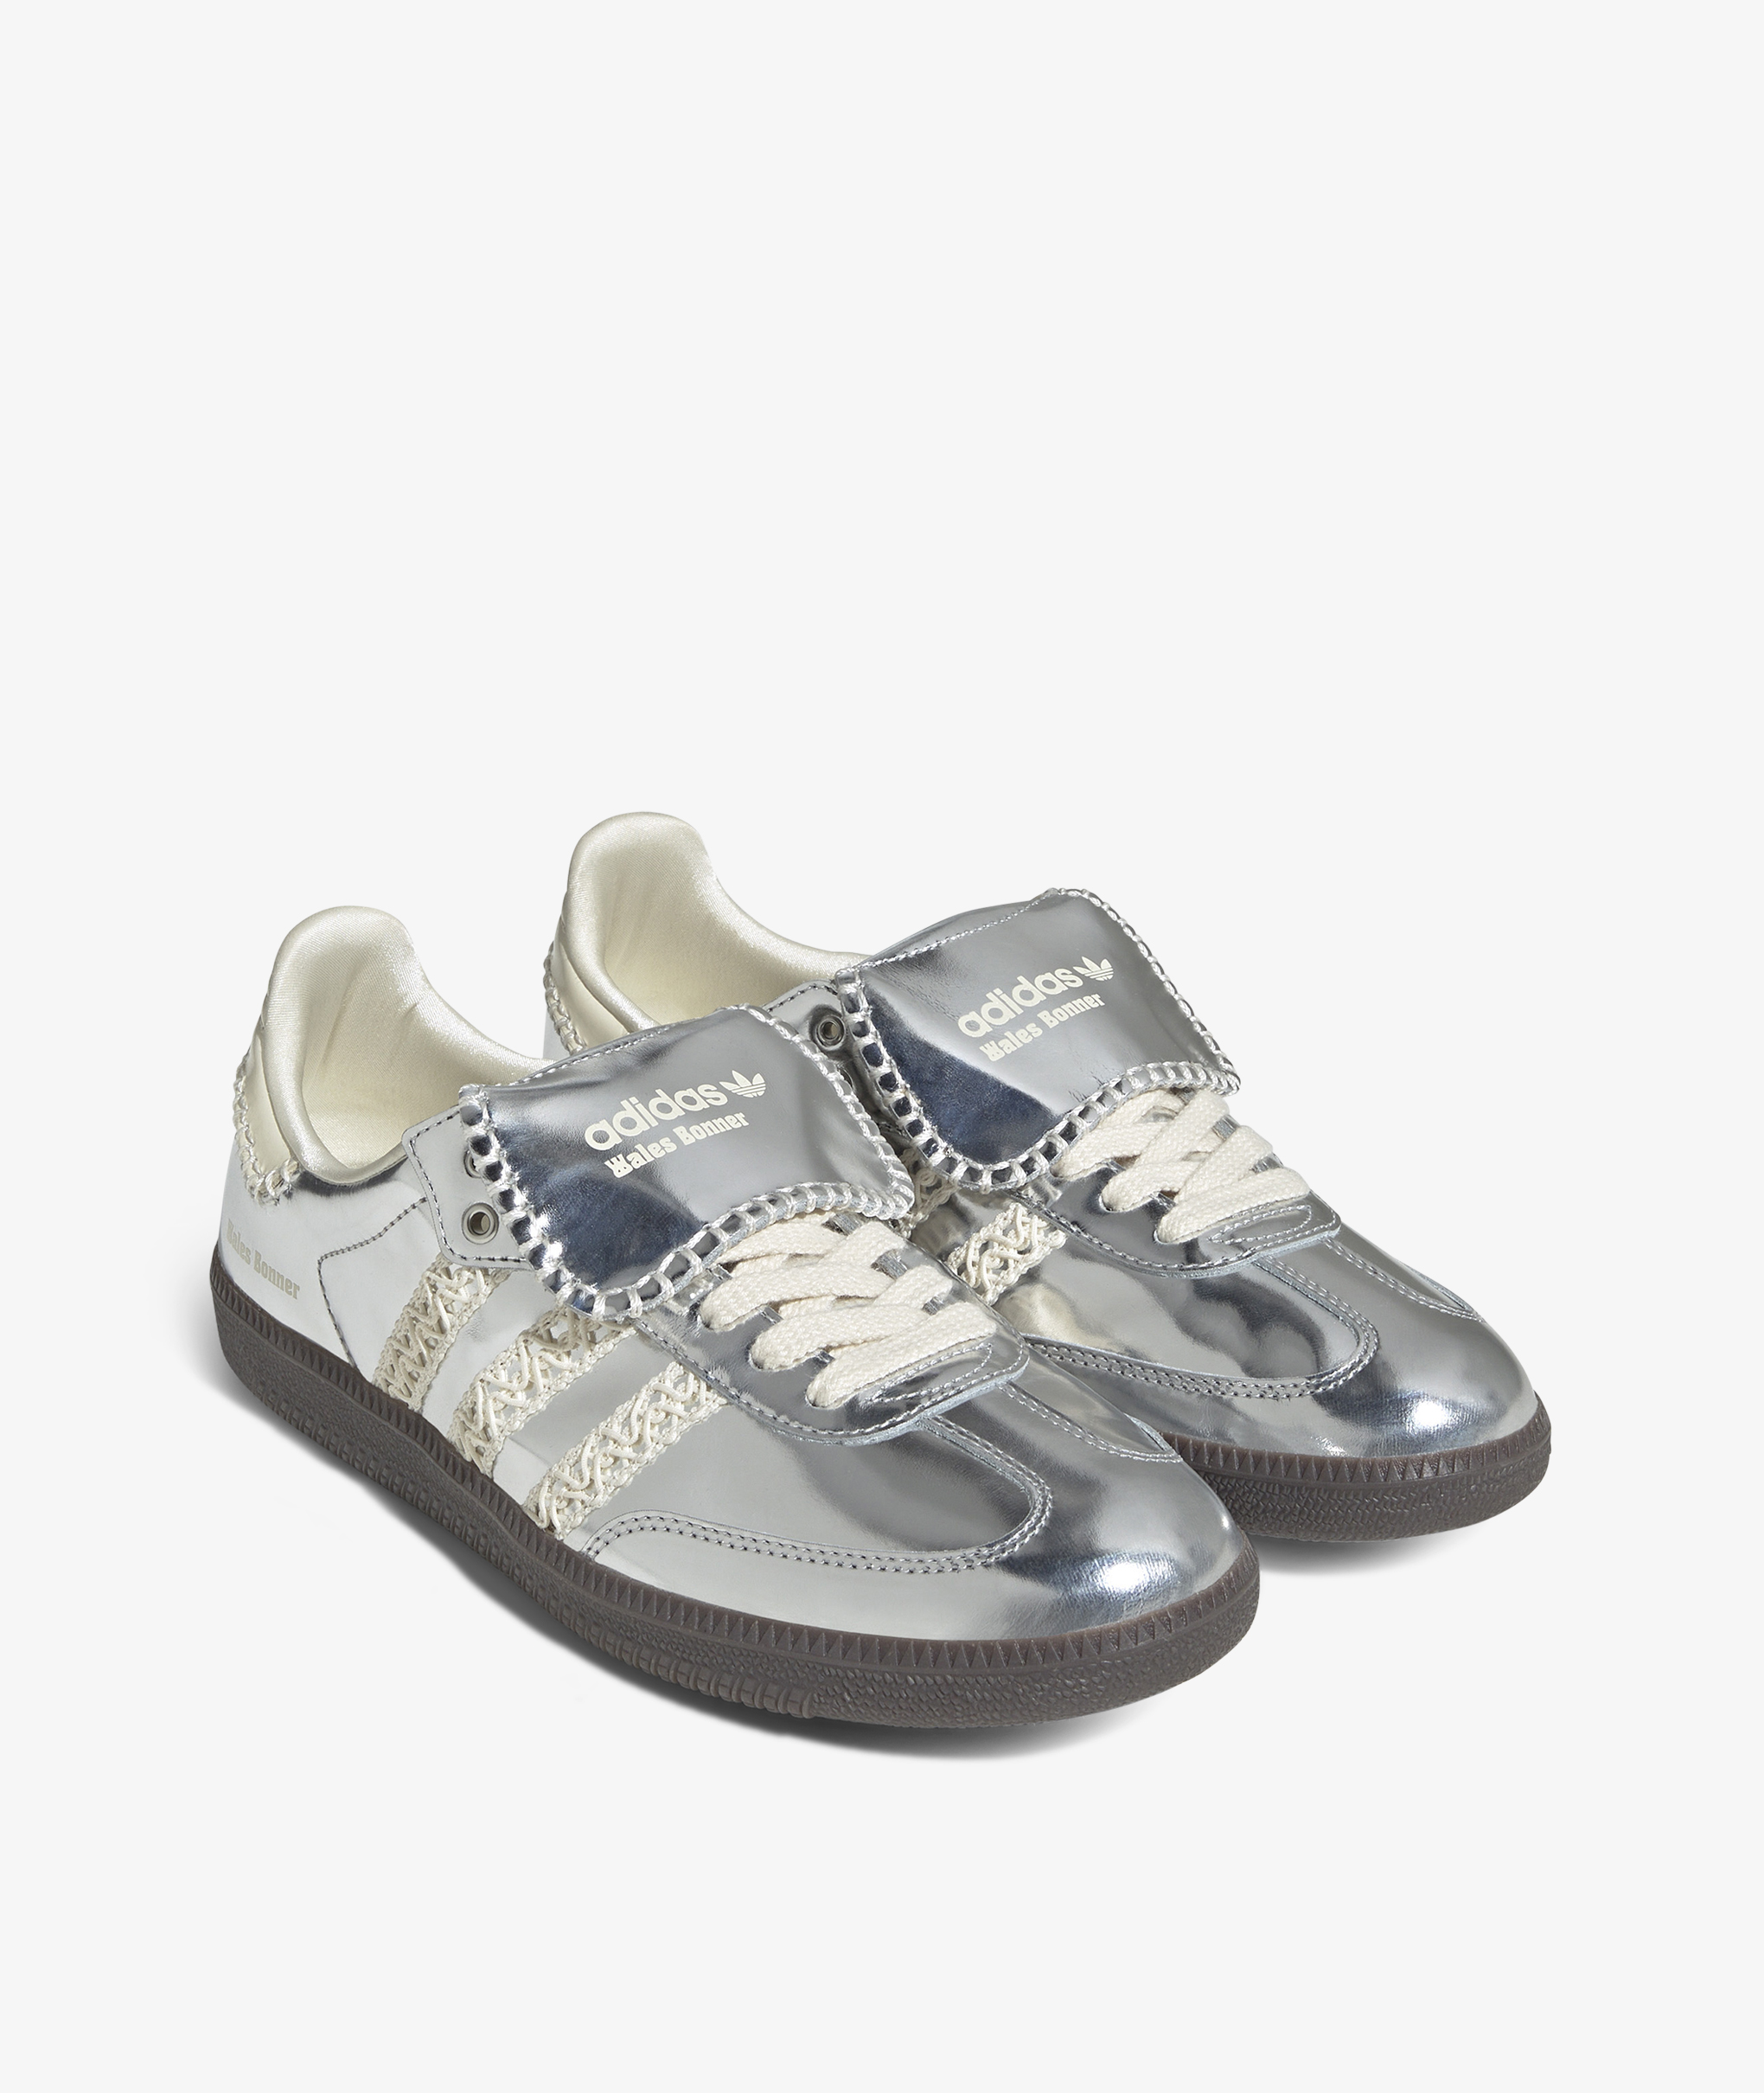 激安特価 人気 Wales bonner Adidas Samba (Silver) 40 靴 cifpuem.uma.es